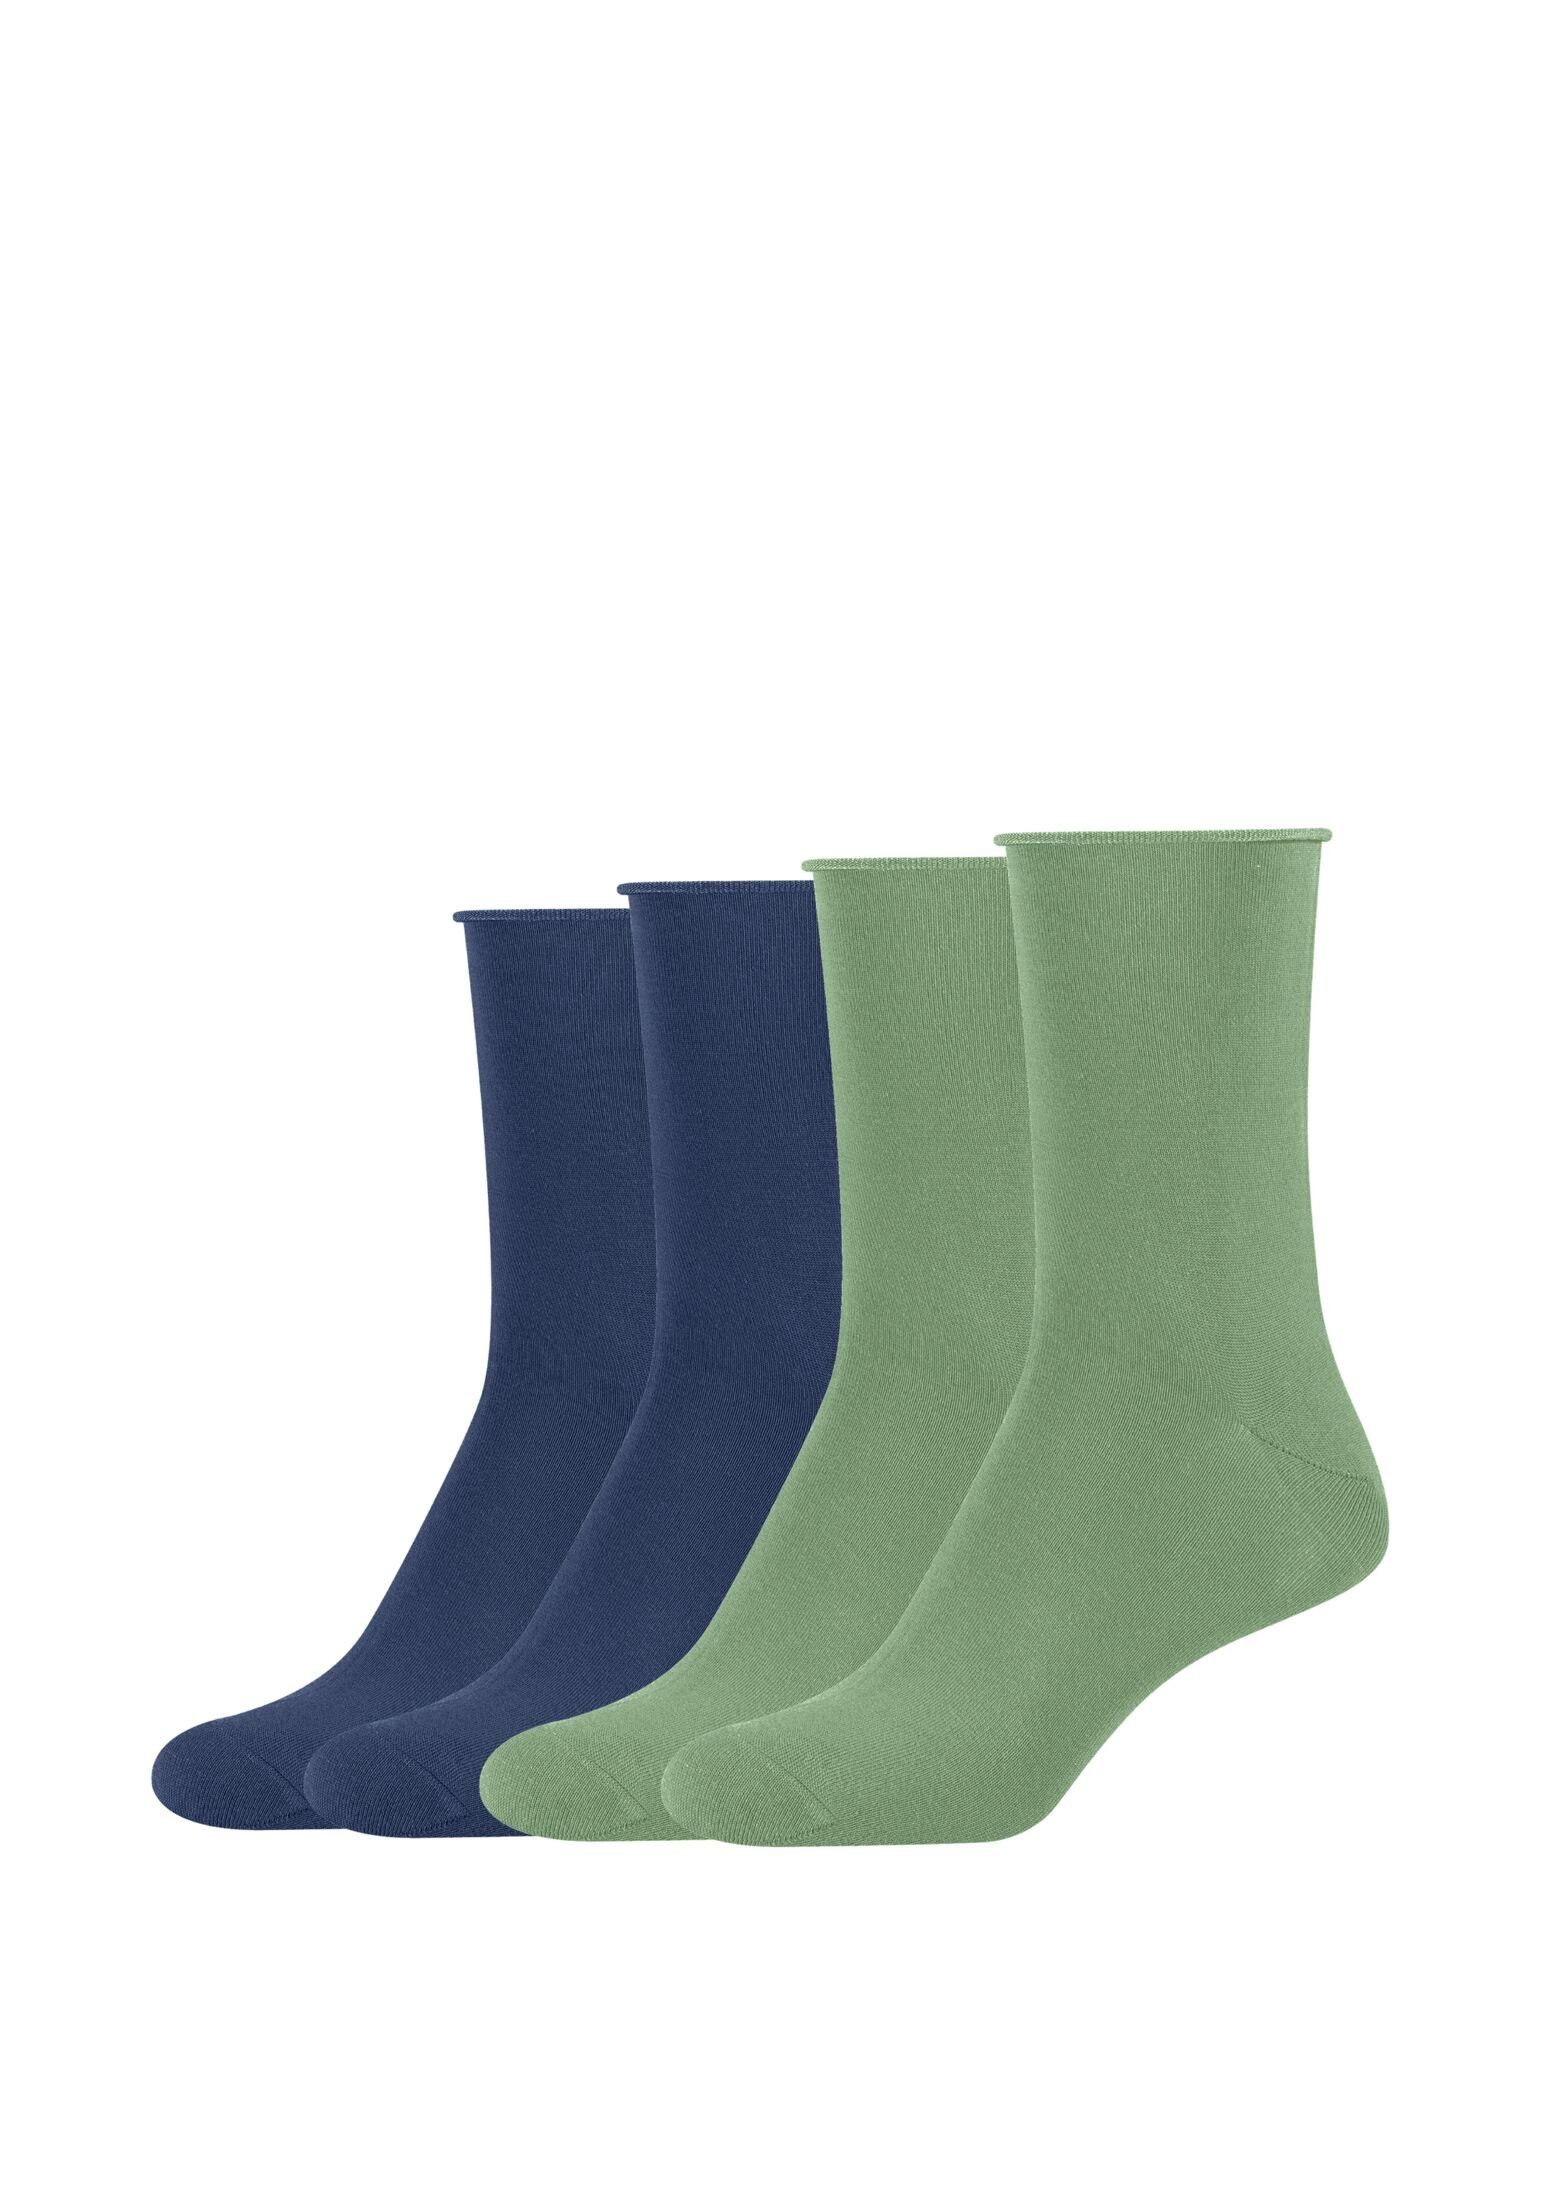 Kaufen Sie die neuesten Artikel im Ausland s.Oliver Socken Socken 4er alaskan Pack blue